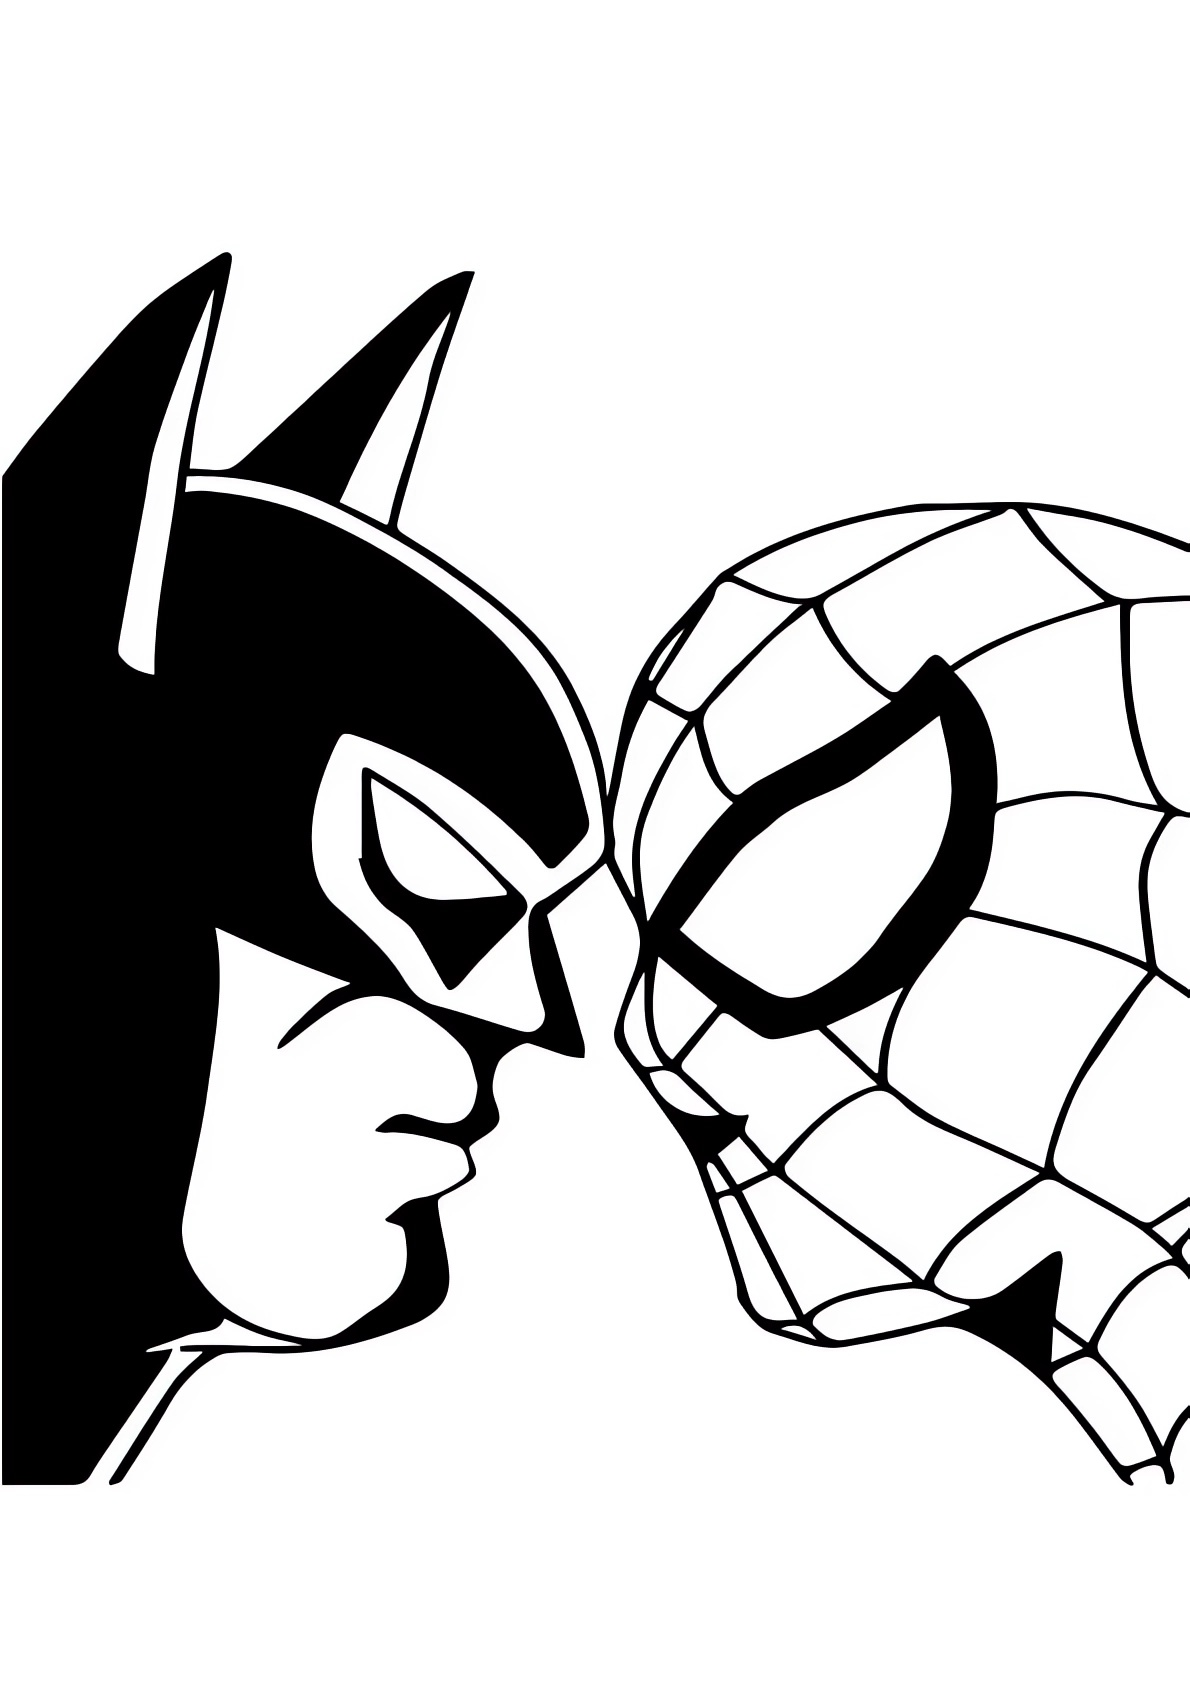 Disegno di Spiderman contro Batman da stampare e colorare 